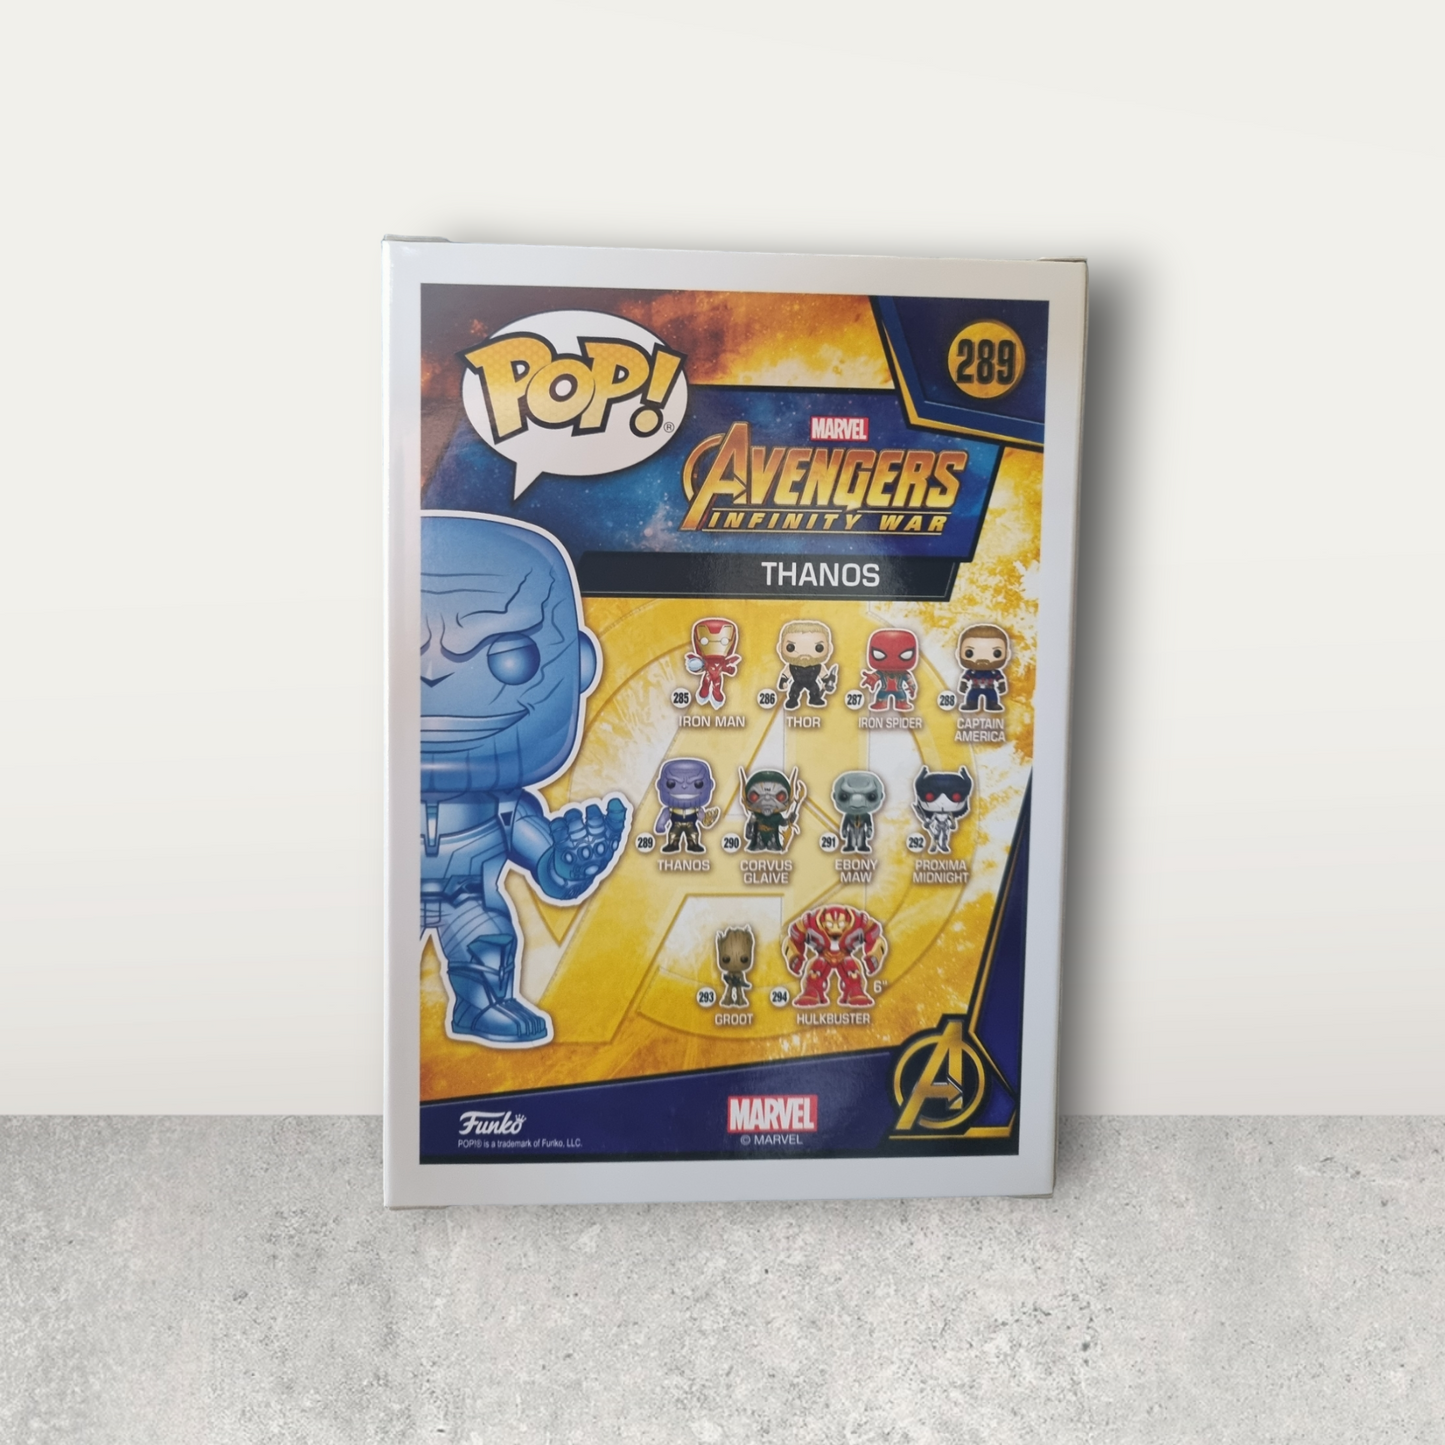 Marvel - Avengers Infinity War - Thanos ( Blue Chrome) 289